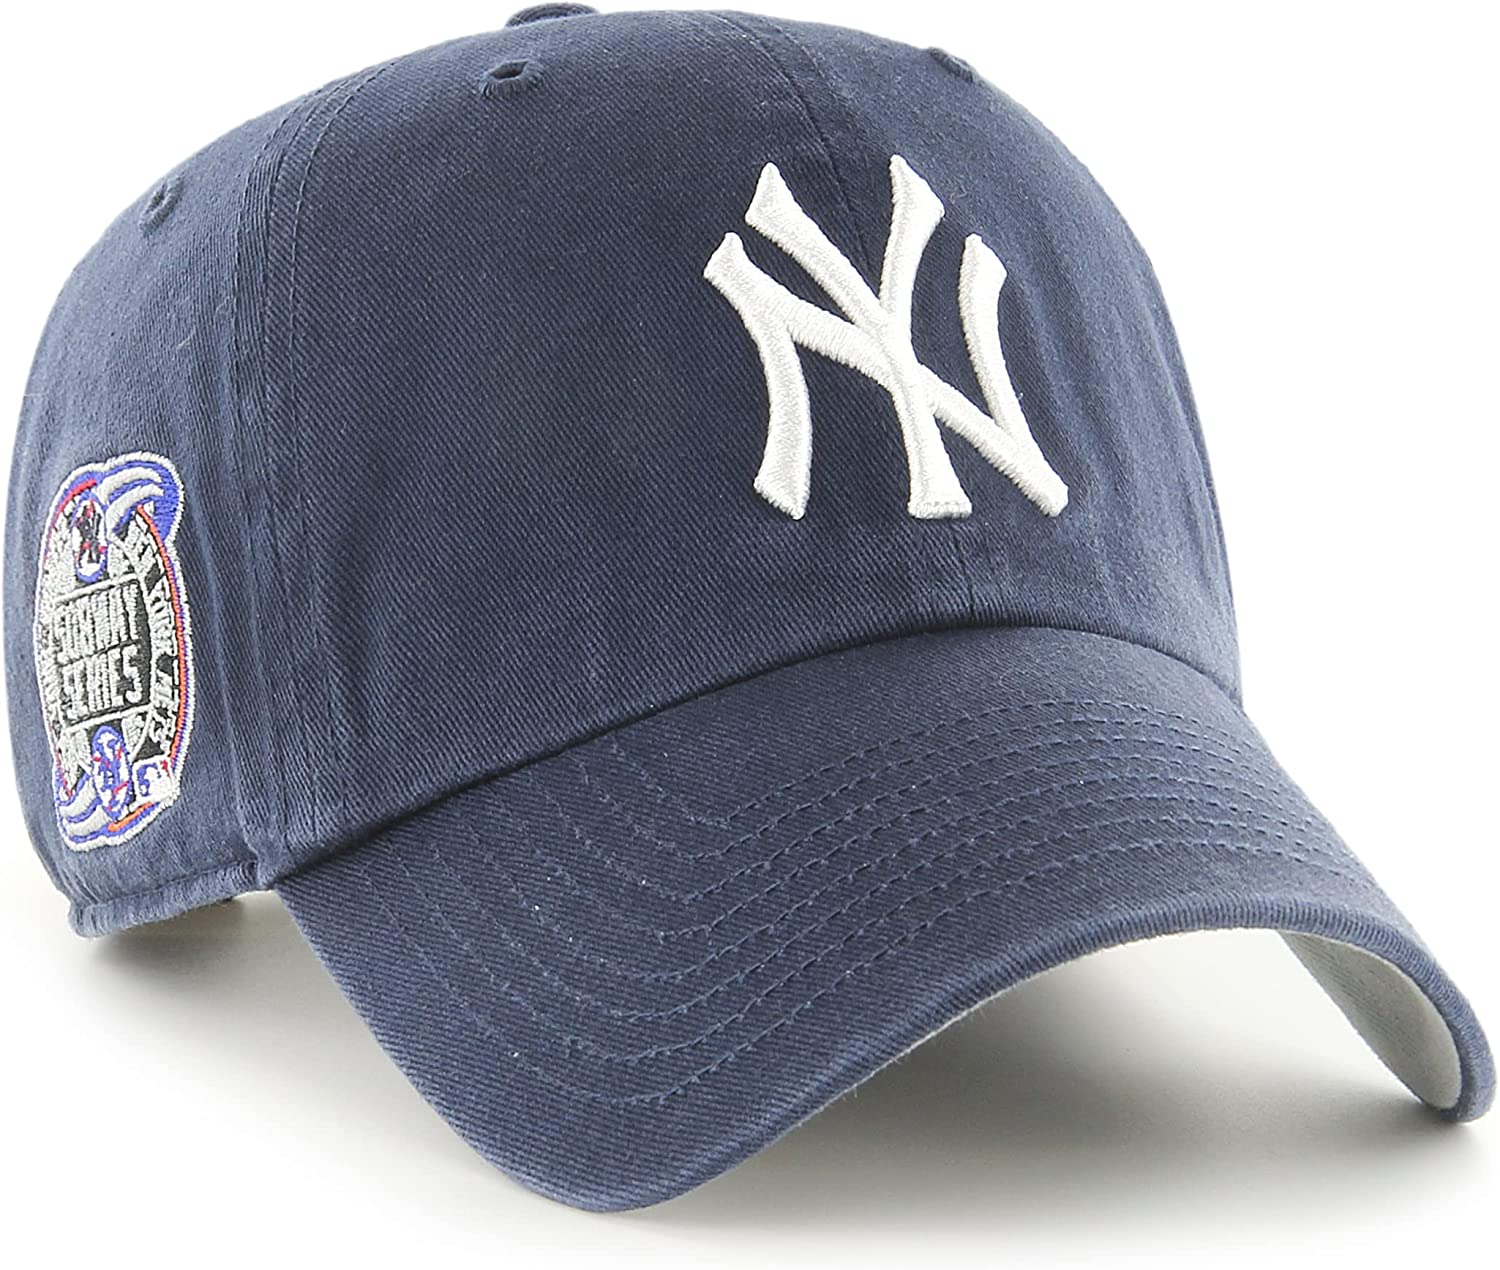 New Vintage 2000 Yankees World Series Champions Cap, Authentic Yankees Baseball Cap, Men's Yankees Caps